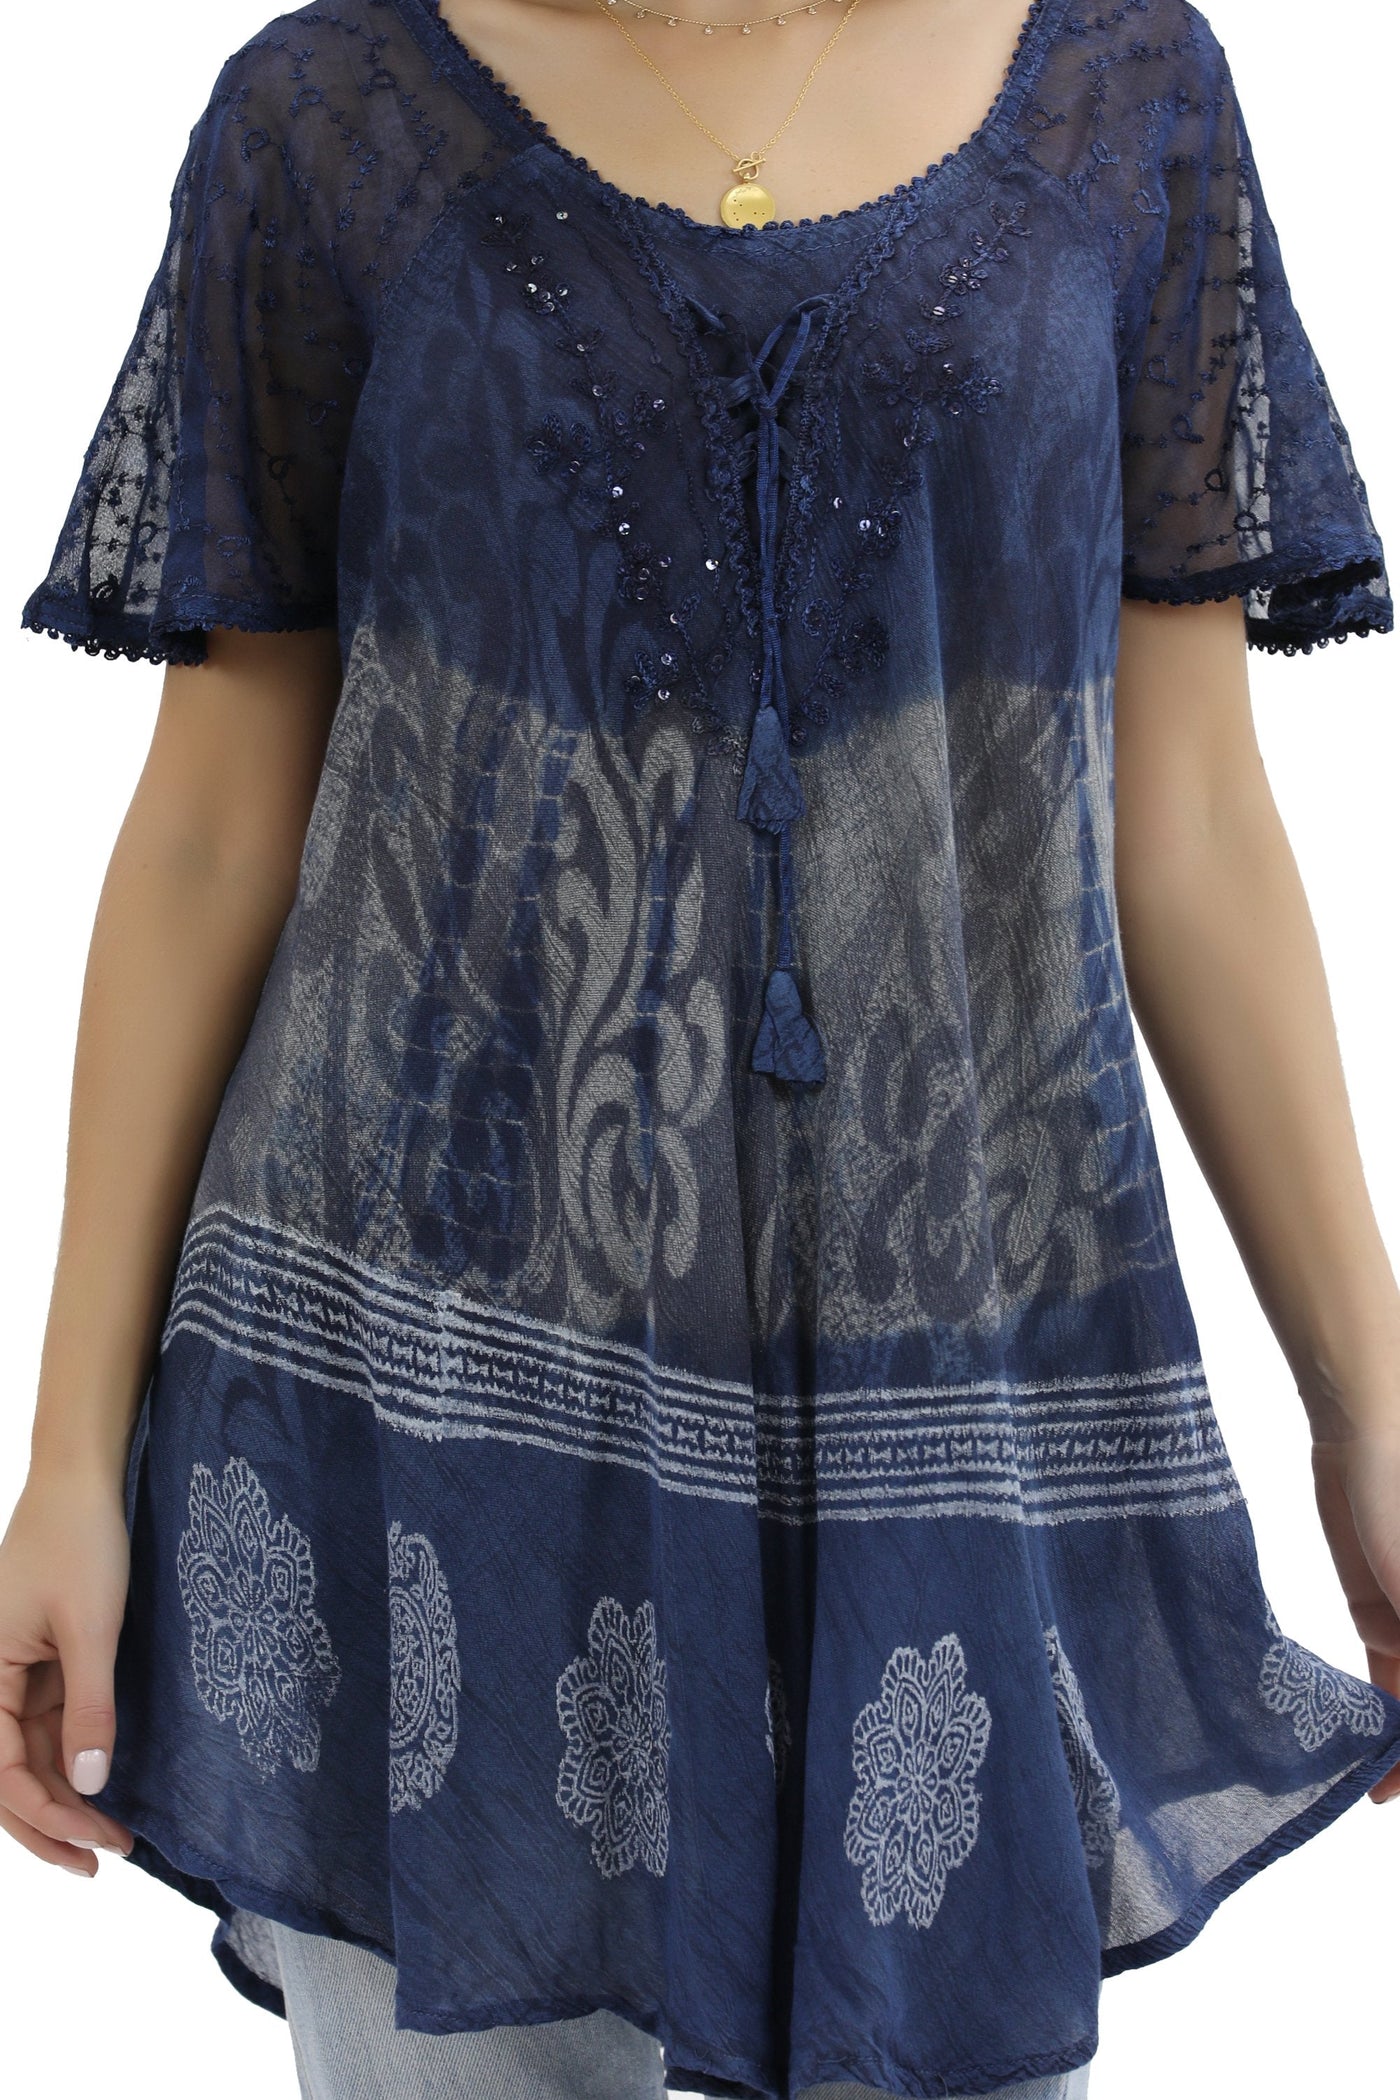 Batik Print Tie Dye Cap Sleeve Blouse 17877 - Advance Apparels Inc